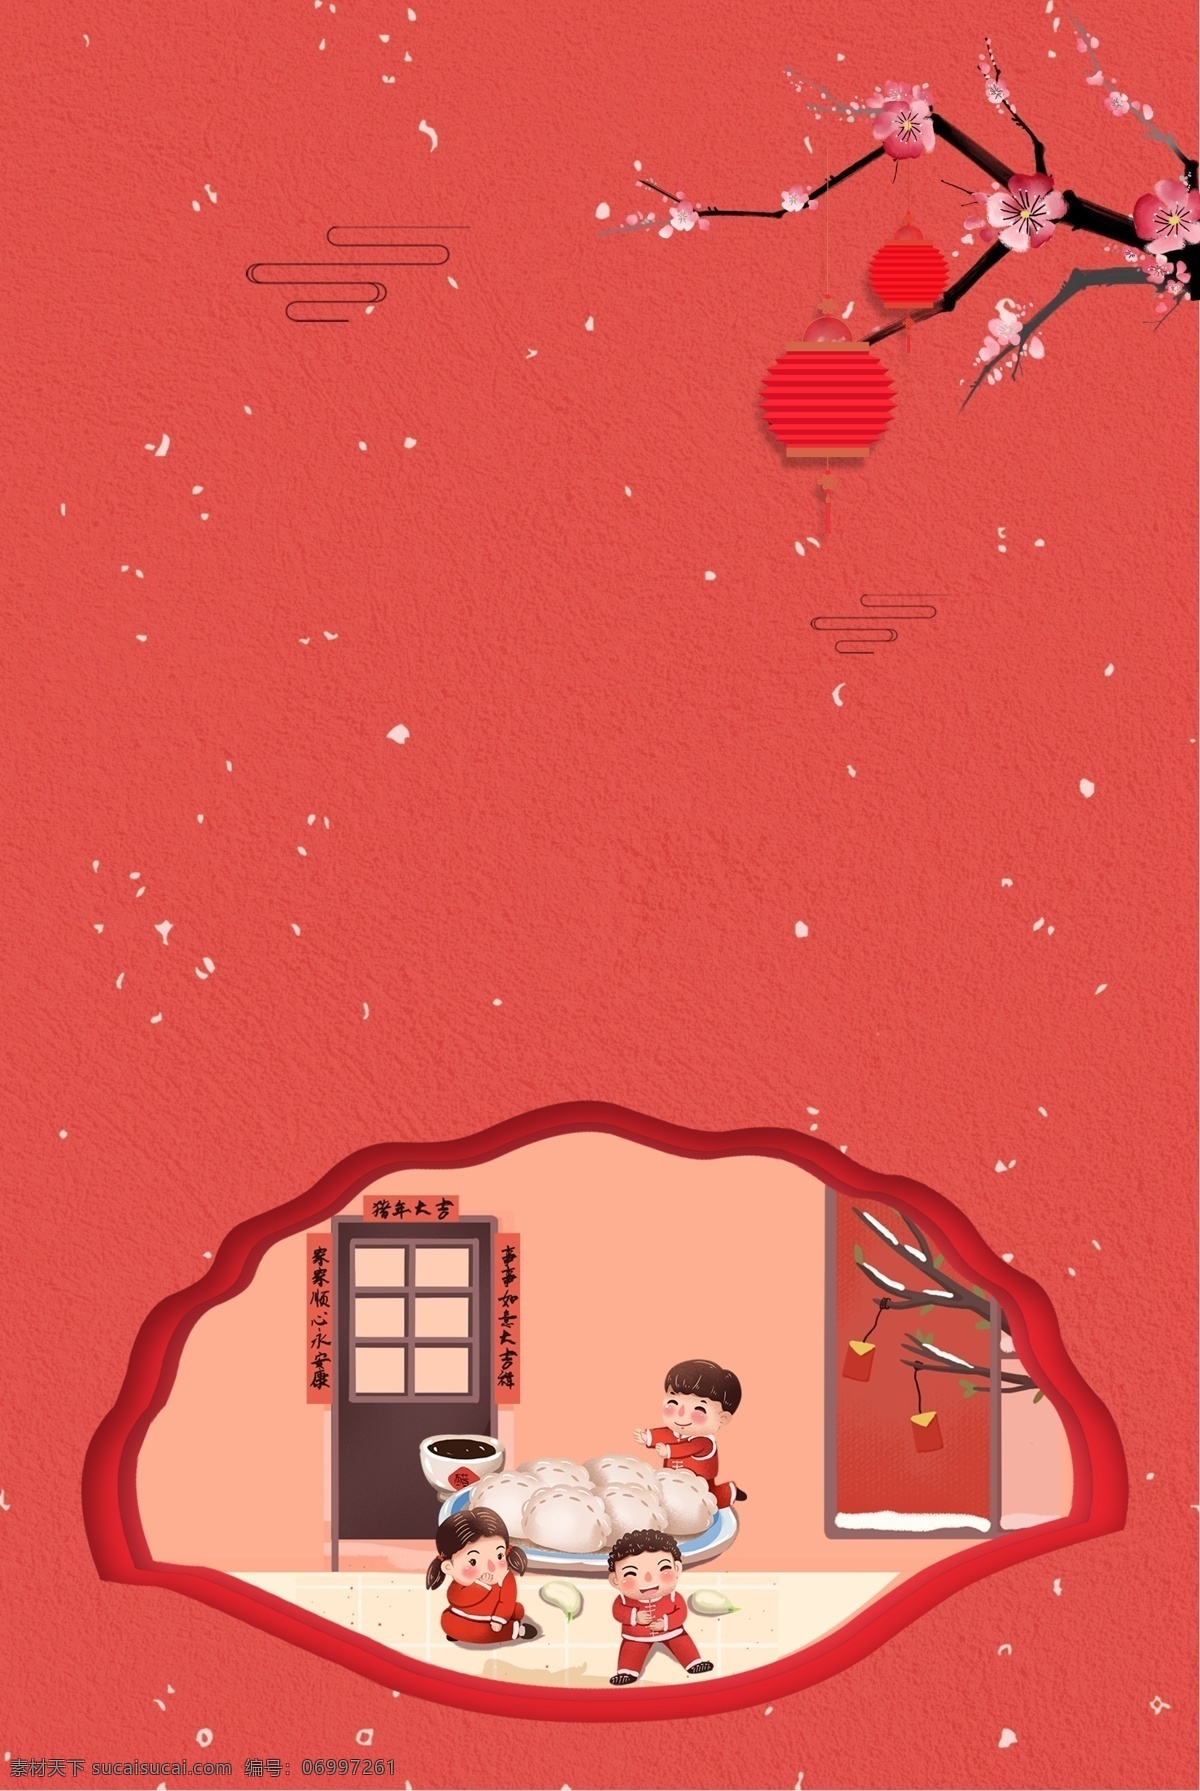 红色 简约 手绘 冬至 日 传统 节气 海报 背景 冬至日 二十四节气 24节气 饺子 水饺 儿童 梅花 灯笼